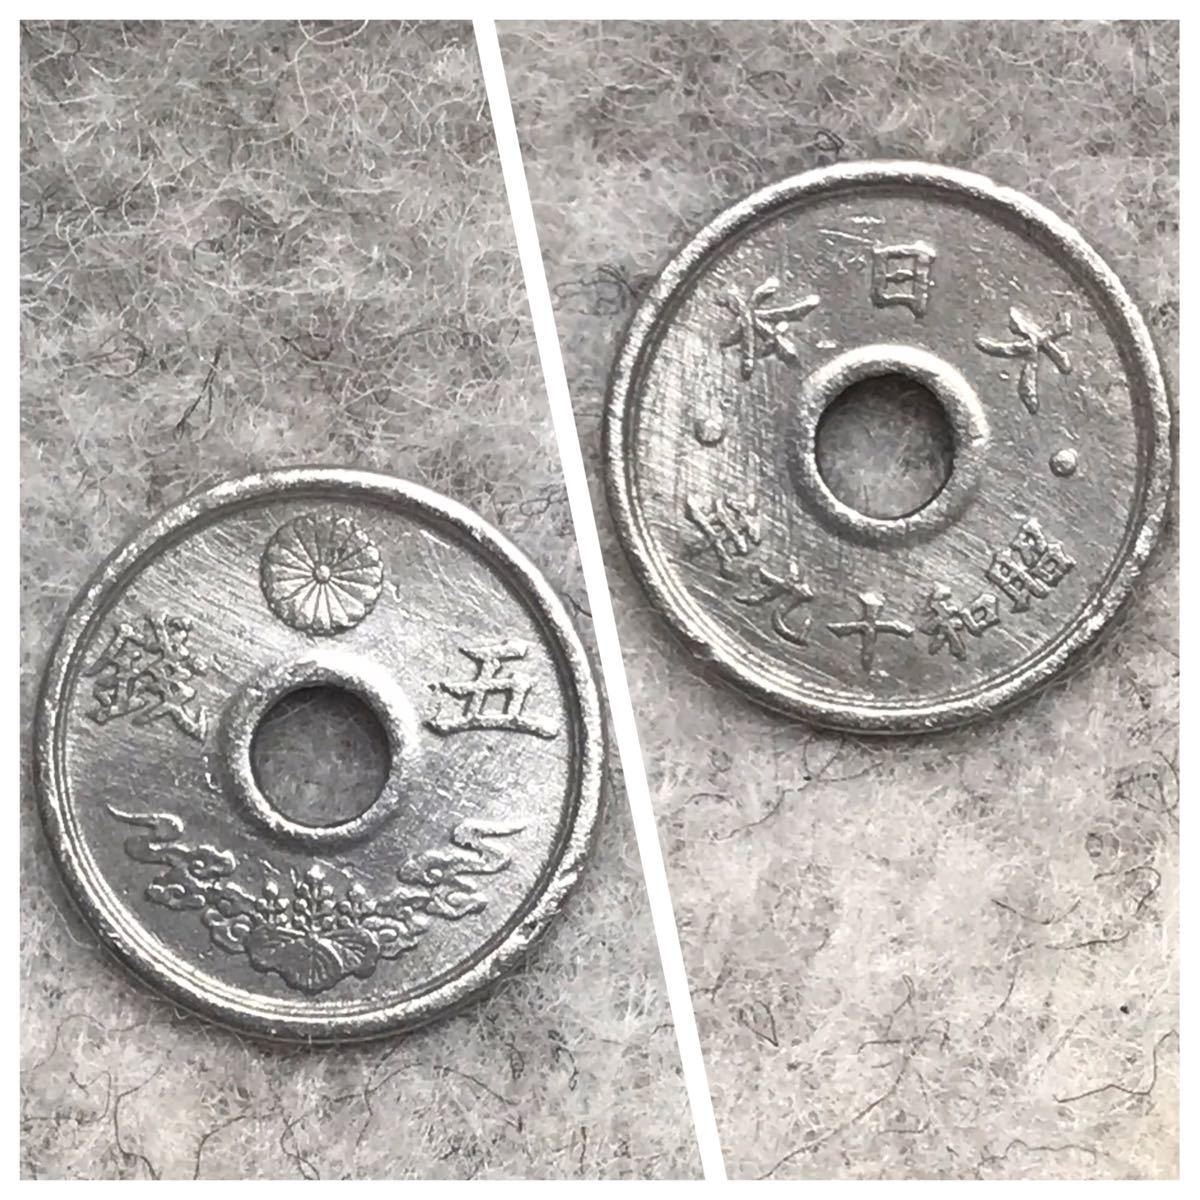 穴アキ5銭錫貨 腫れコブへゲーエラー、大へゲーエラー、小穴枠ズレエラー含む 25点セット / #0331